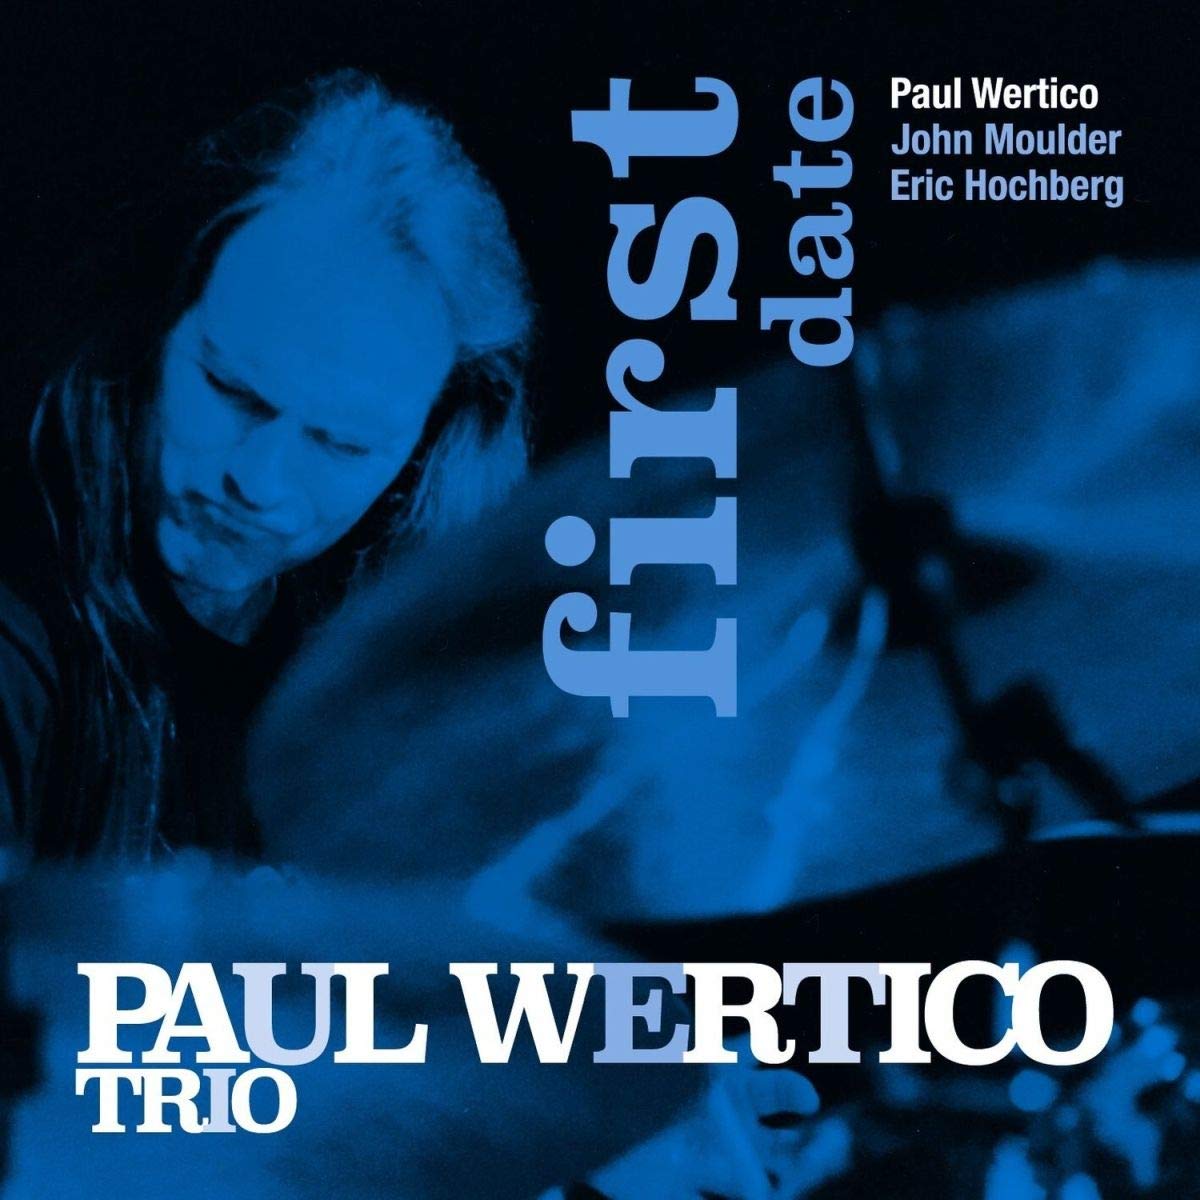 PAUL WERTICO - Paul Wertico Trio : First Date cover 